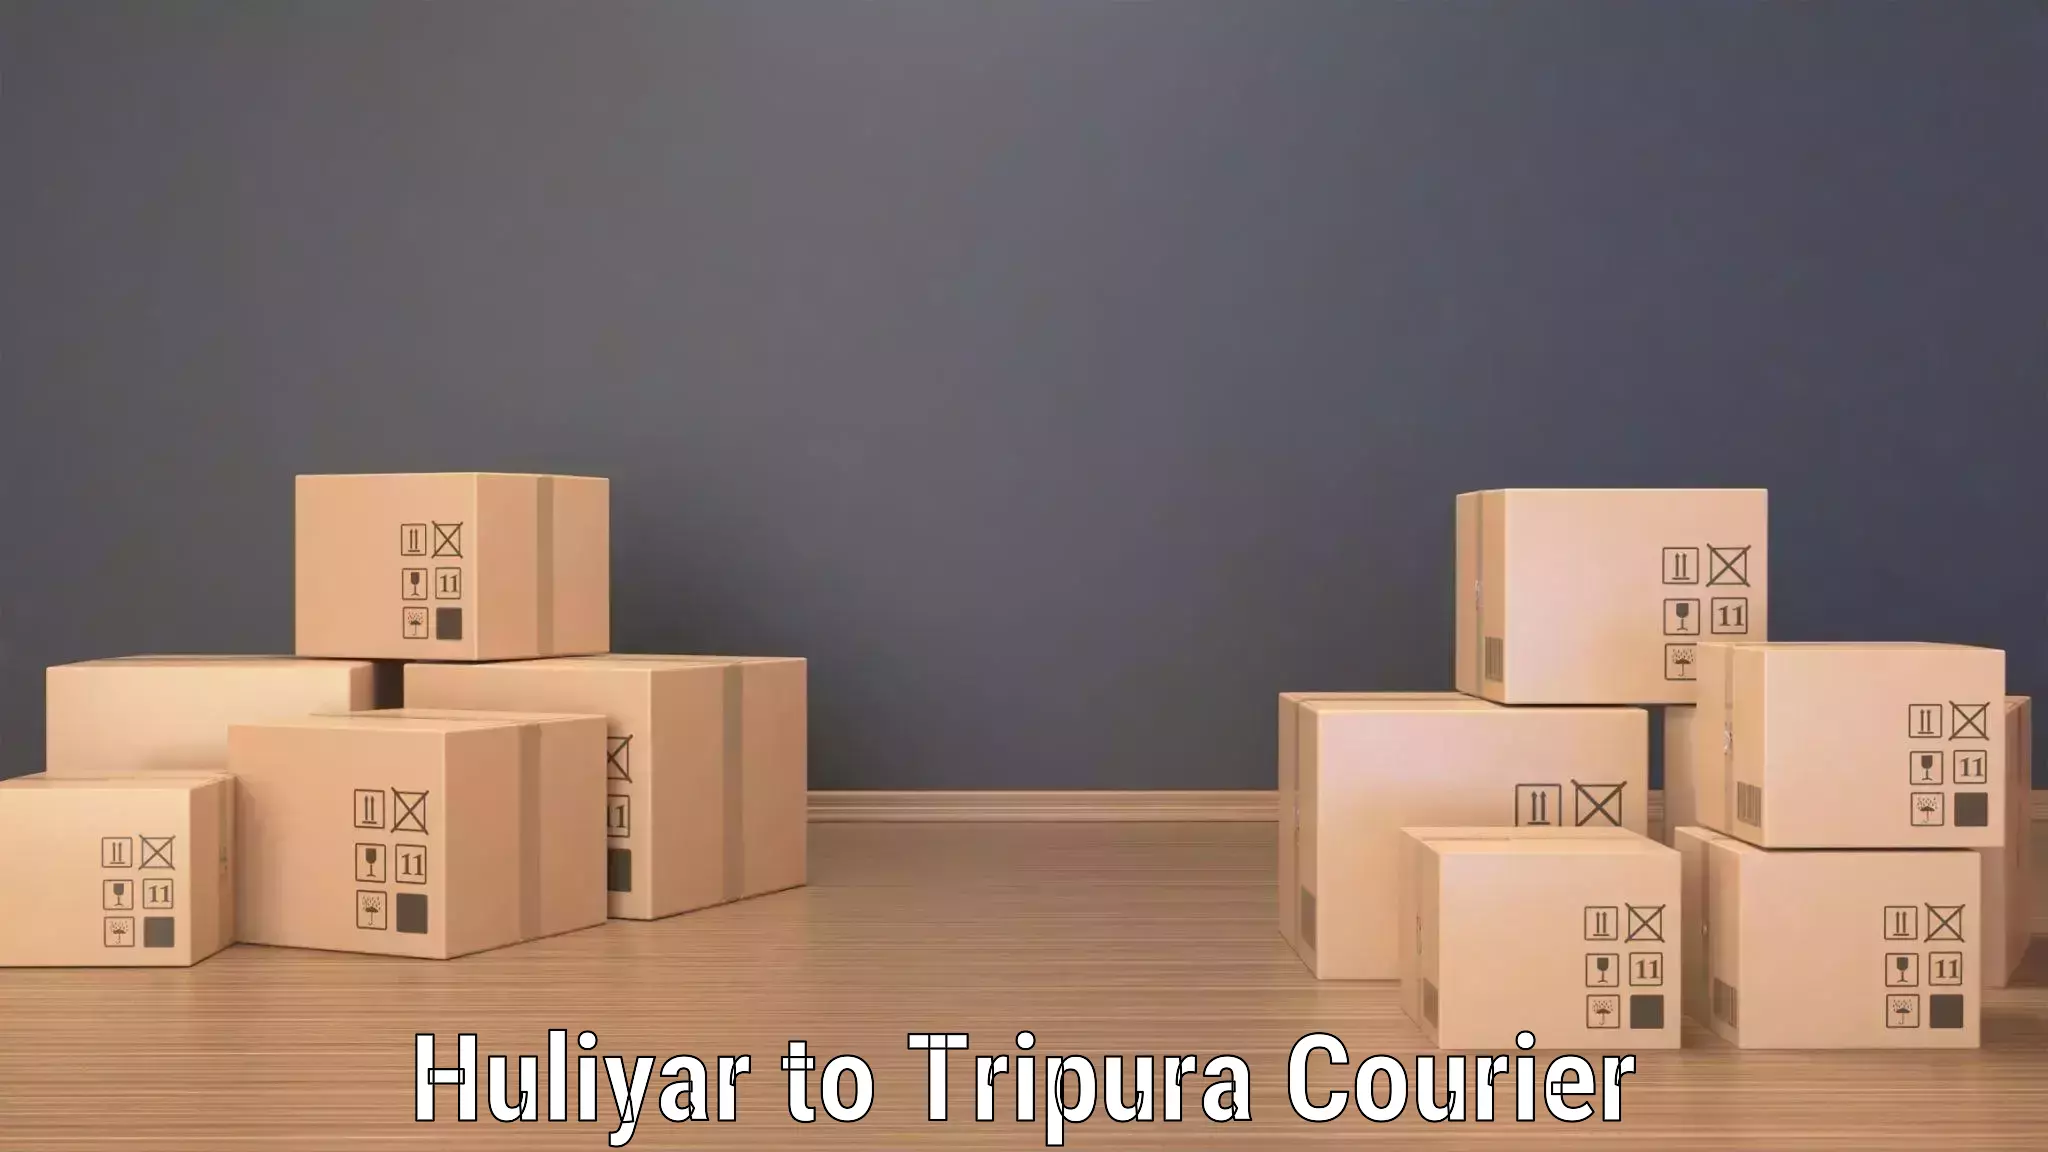 Express postal services Huliyar to Udaipur Tripura